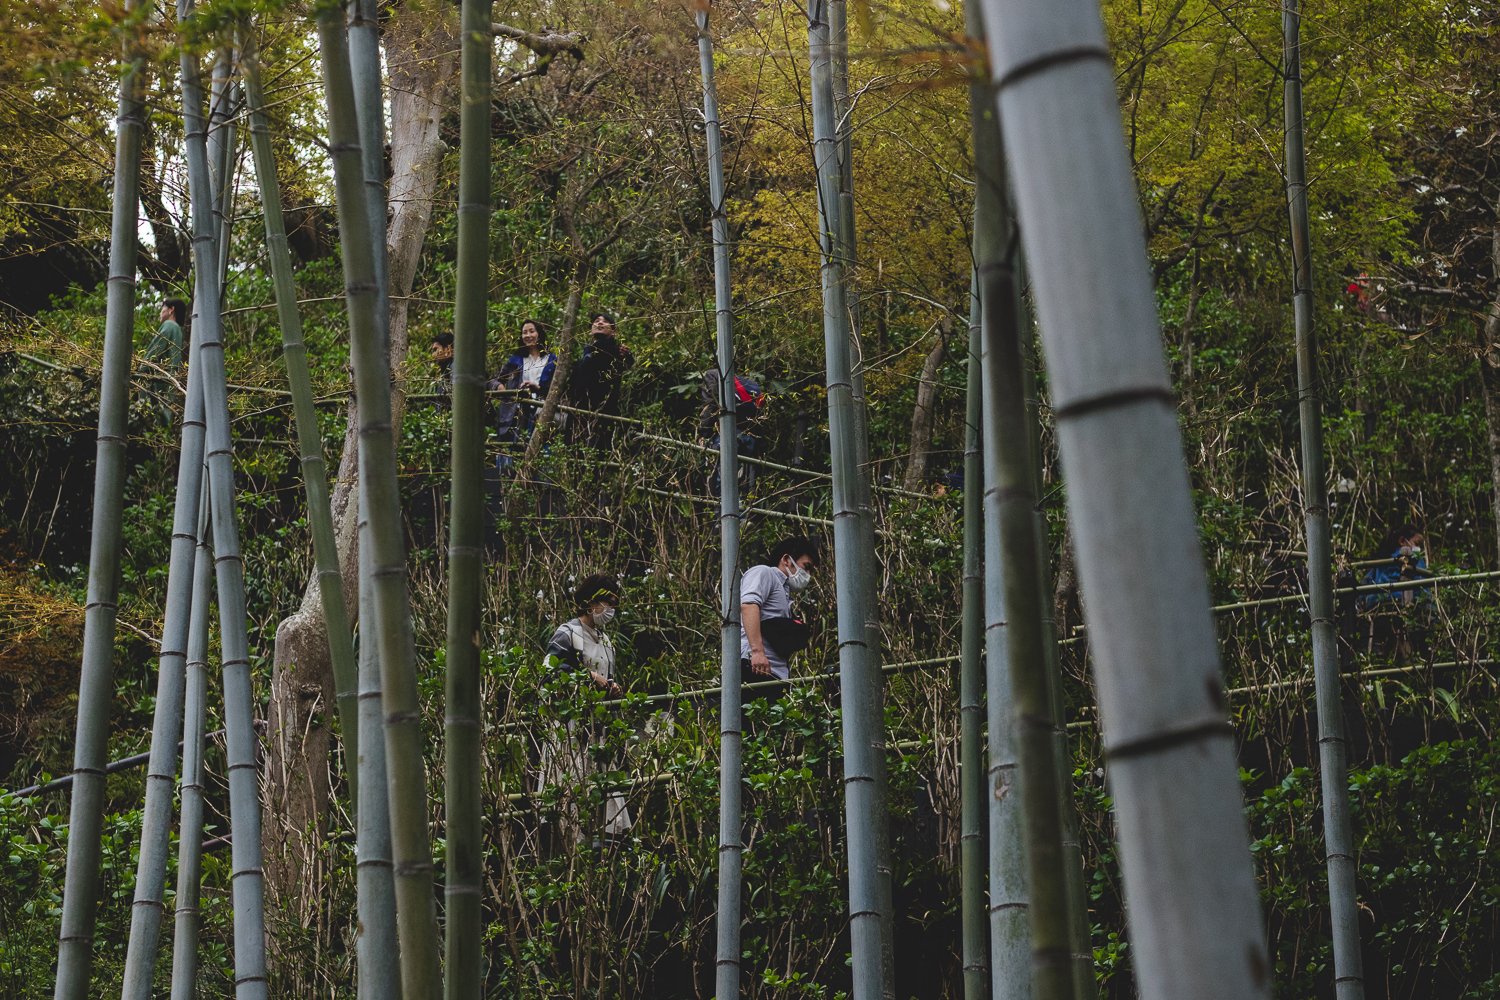 On voit des gens montant un chemin entre des bambous. C'est le chemin qui mène vers la vue sur la baie de Kamakura